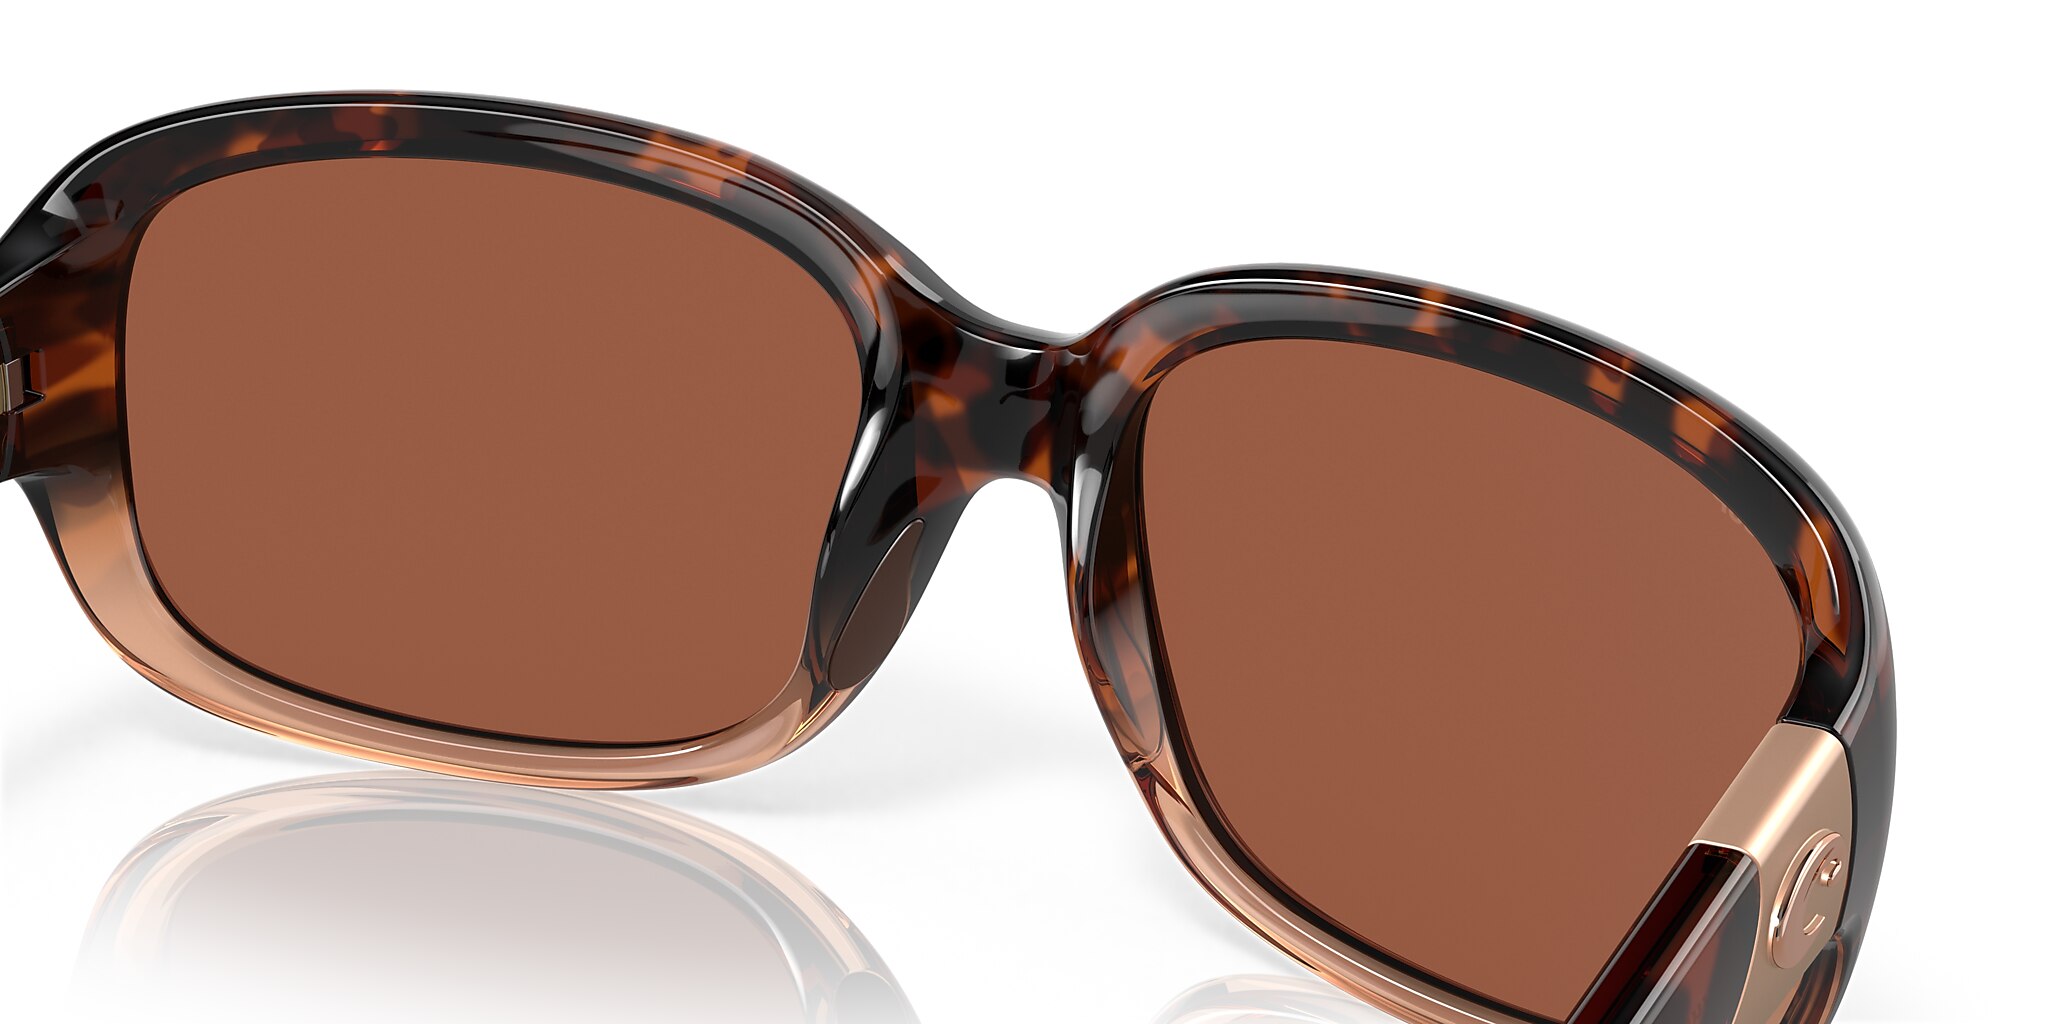 Gannet Polarized Sunglasses in Copper | Costa Del Mar®